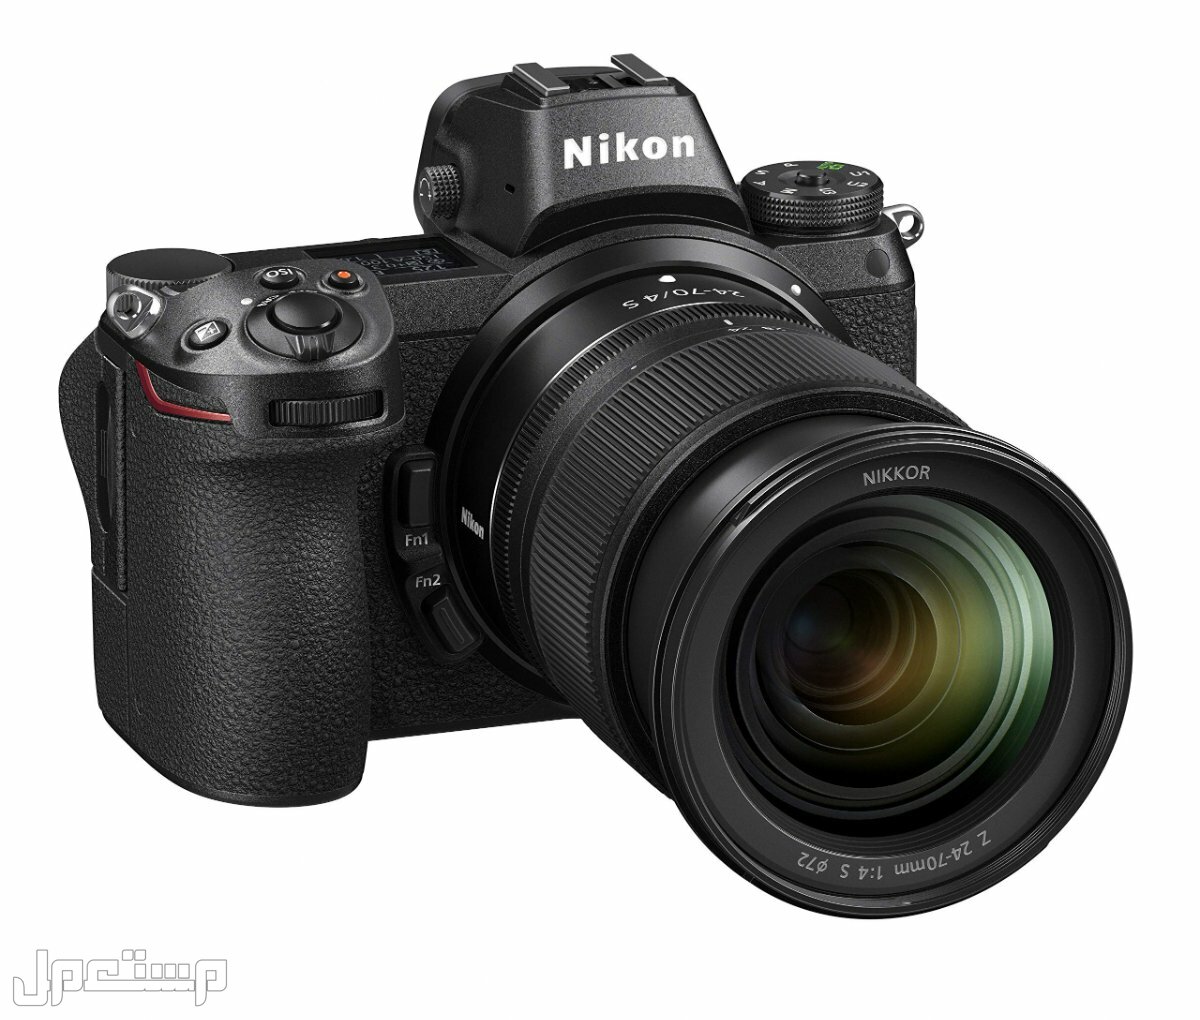 مواصفات ومميزات وأسعار أفضل أنواع كاميرات نيكون للمحترفين في السودان كاميرا Nikon Z6